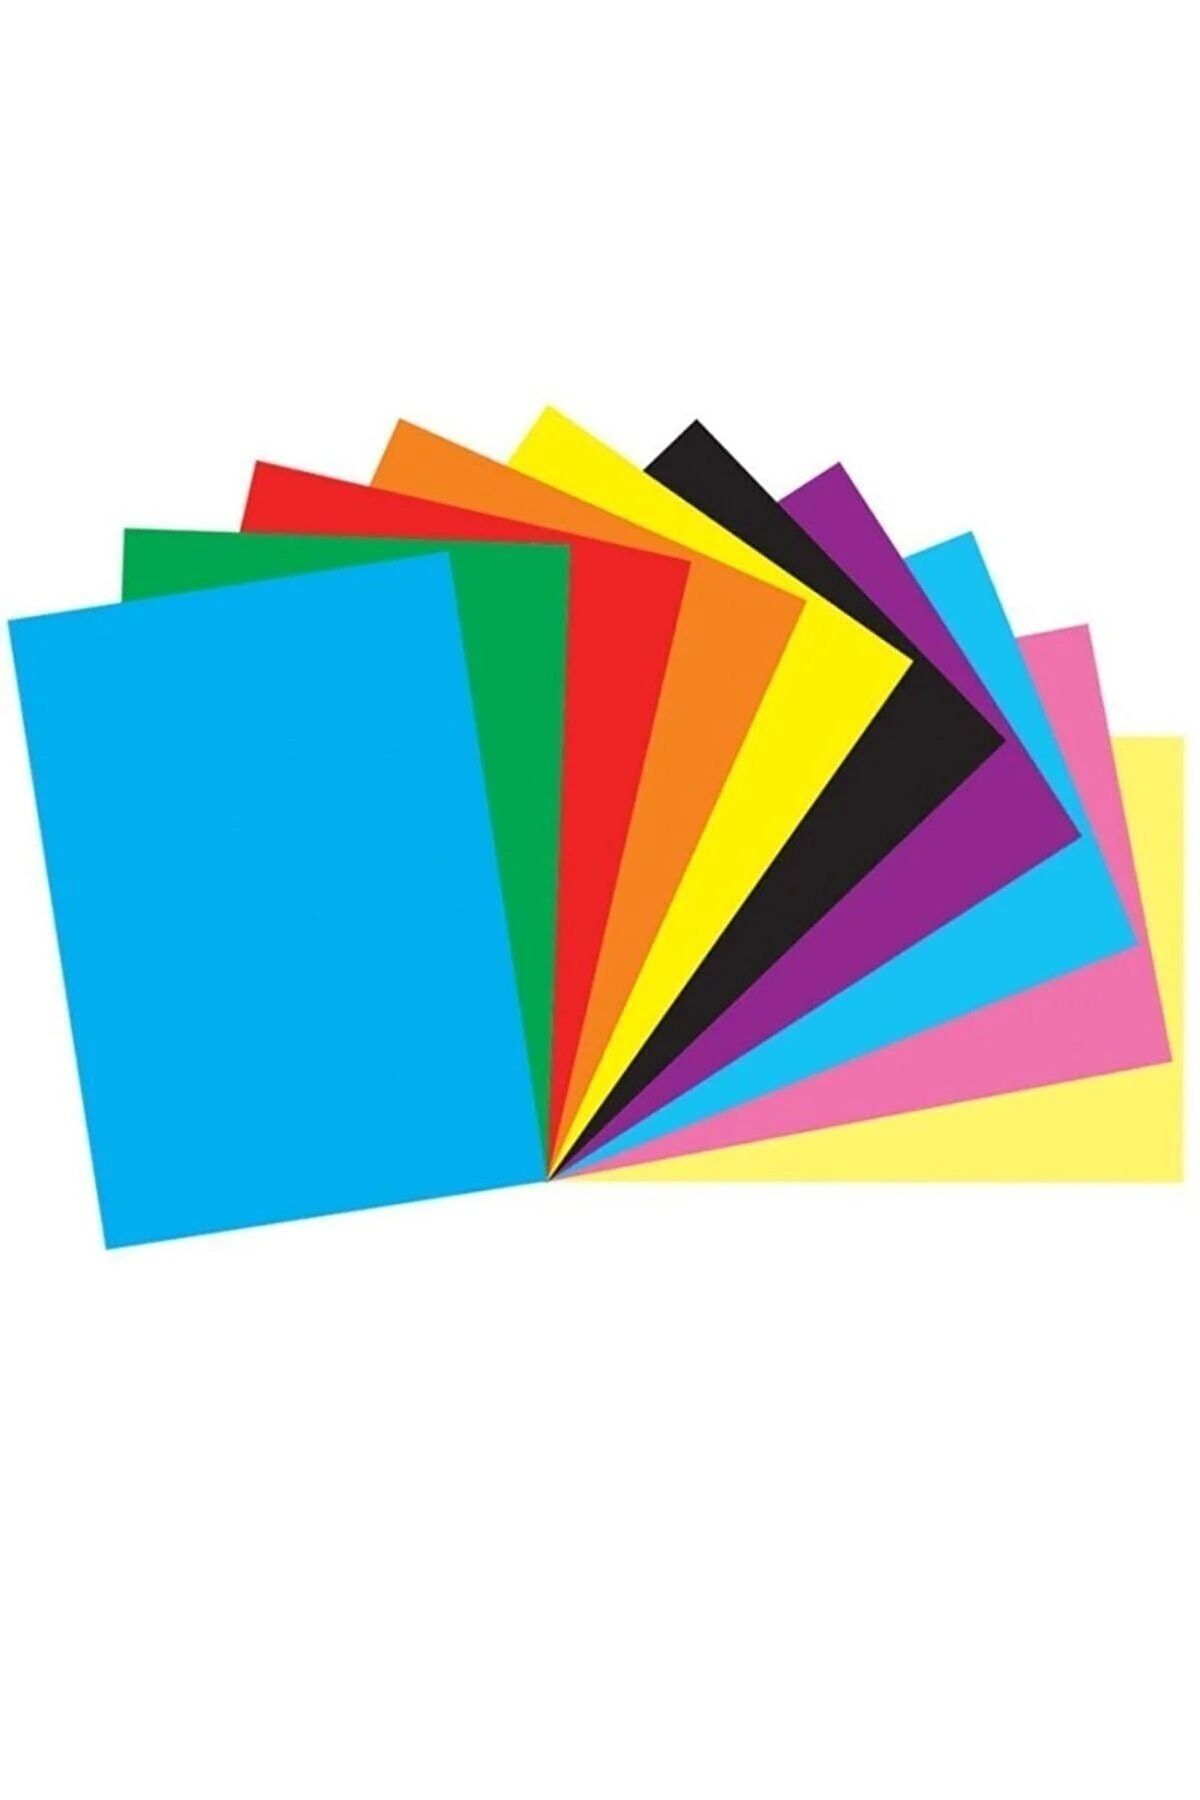 HOBBYRONS Elişi Kağıdı Karışık 10 Renk